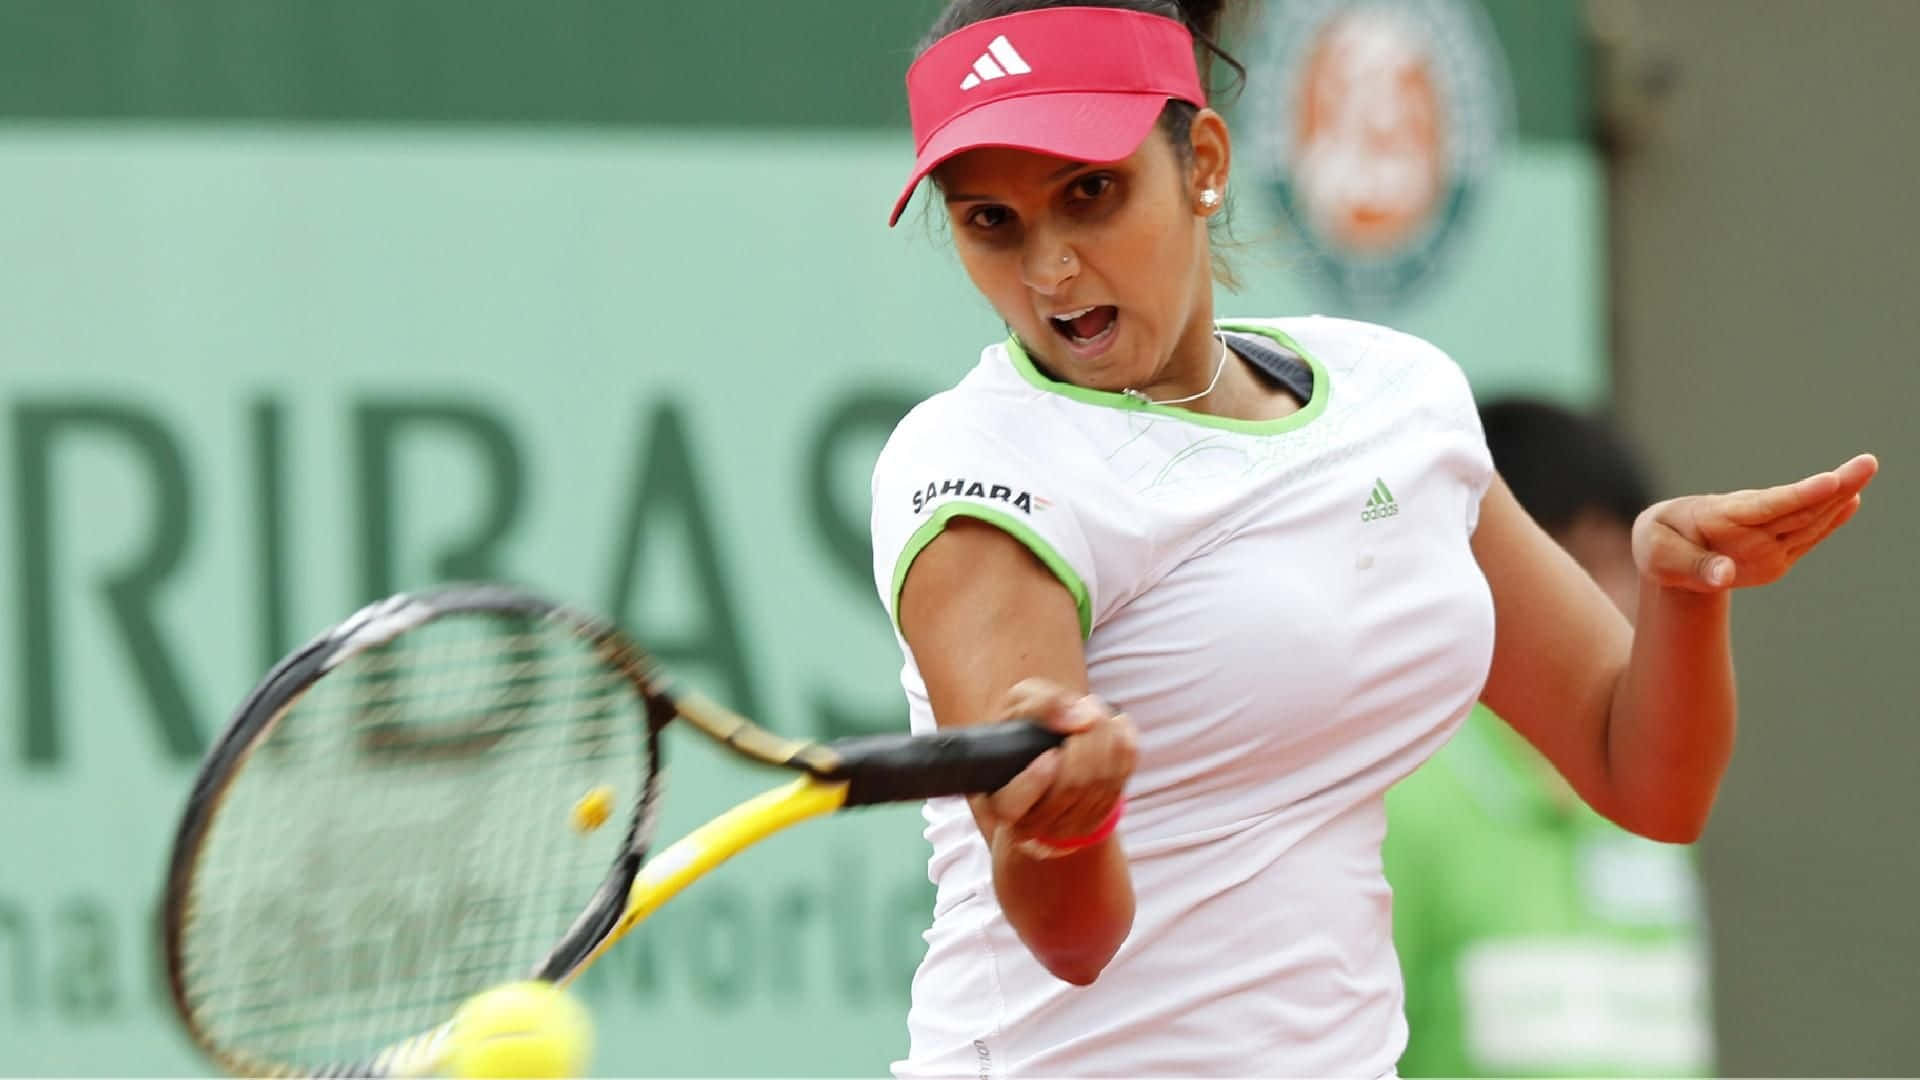 Fondohd De La Jugadora De Tenis India Sania Mirza